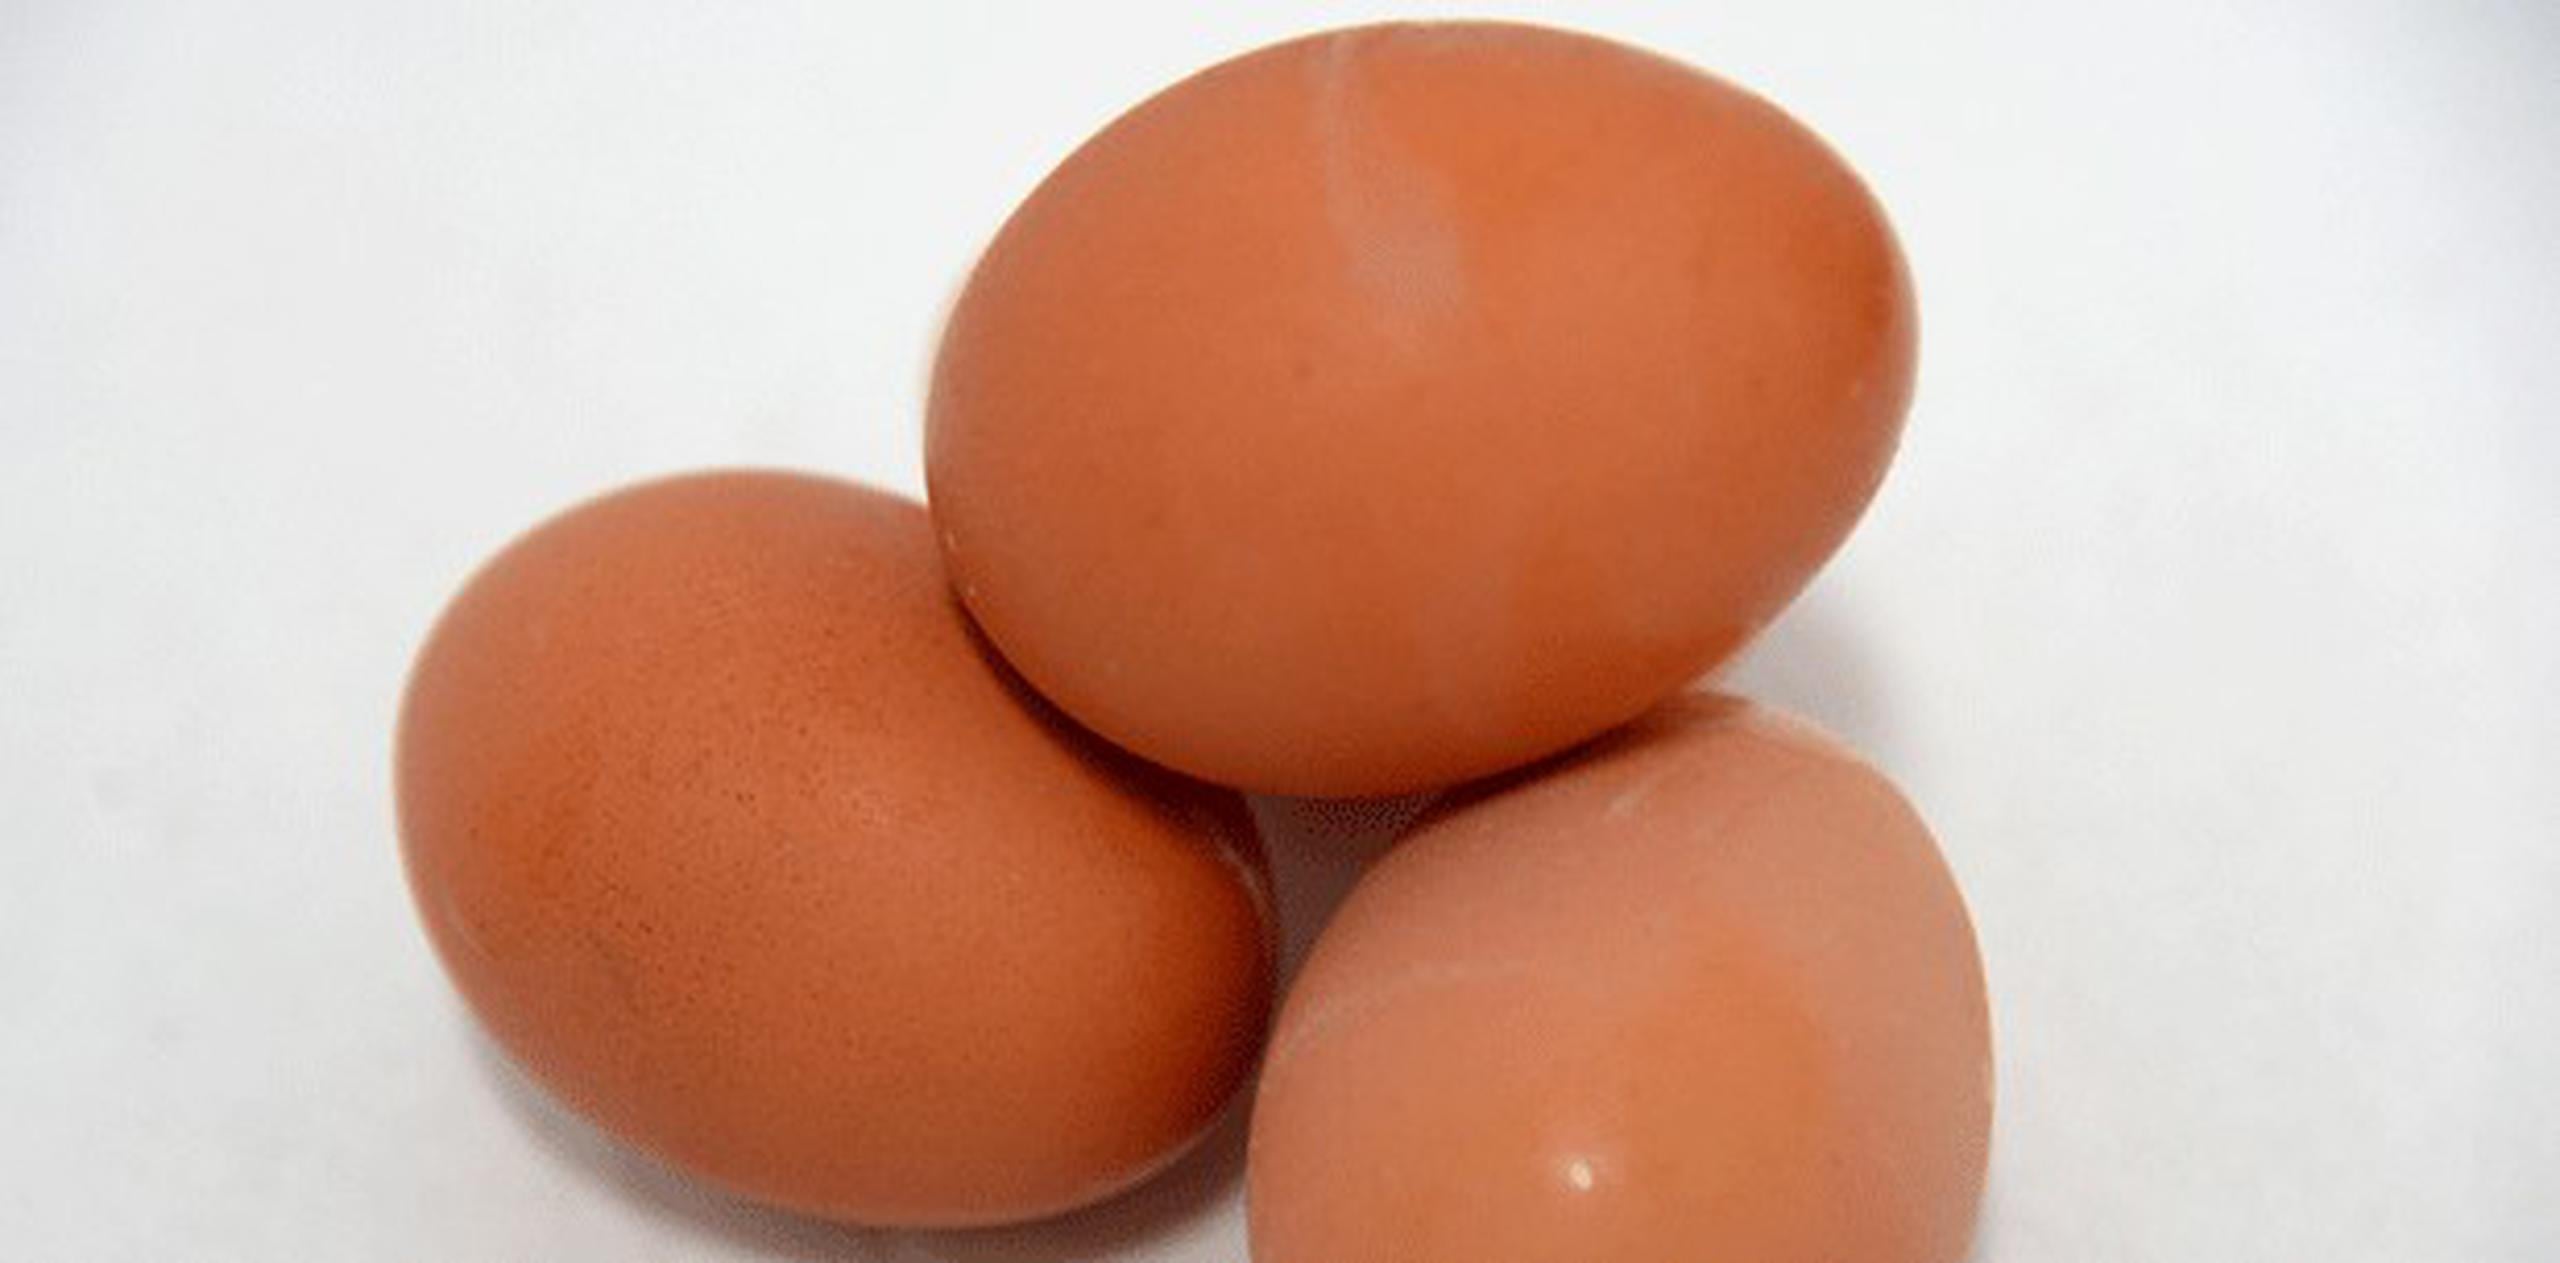 En el vídeo se explica que la cáscara se desprenderá completamente del huevo al colocar el mismo en un vaso de agua y después, agitarlo de lado a lado.  (Archivo)